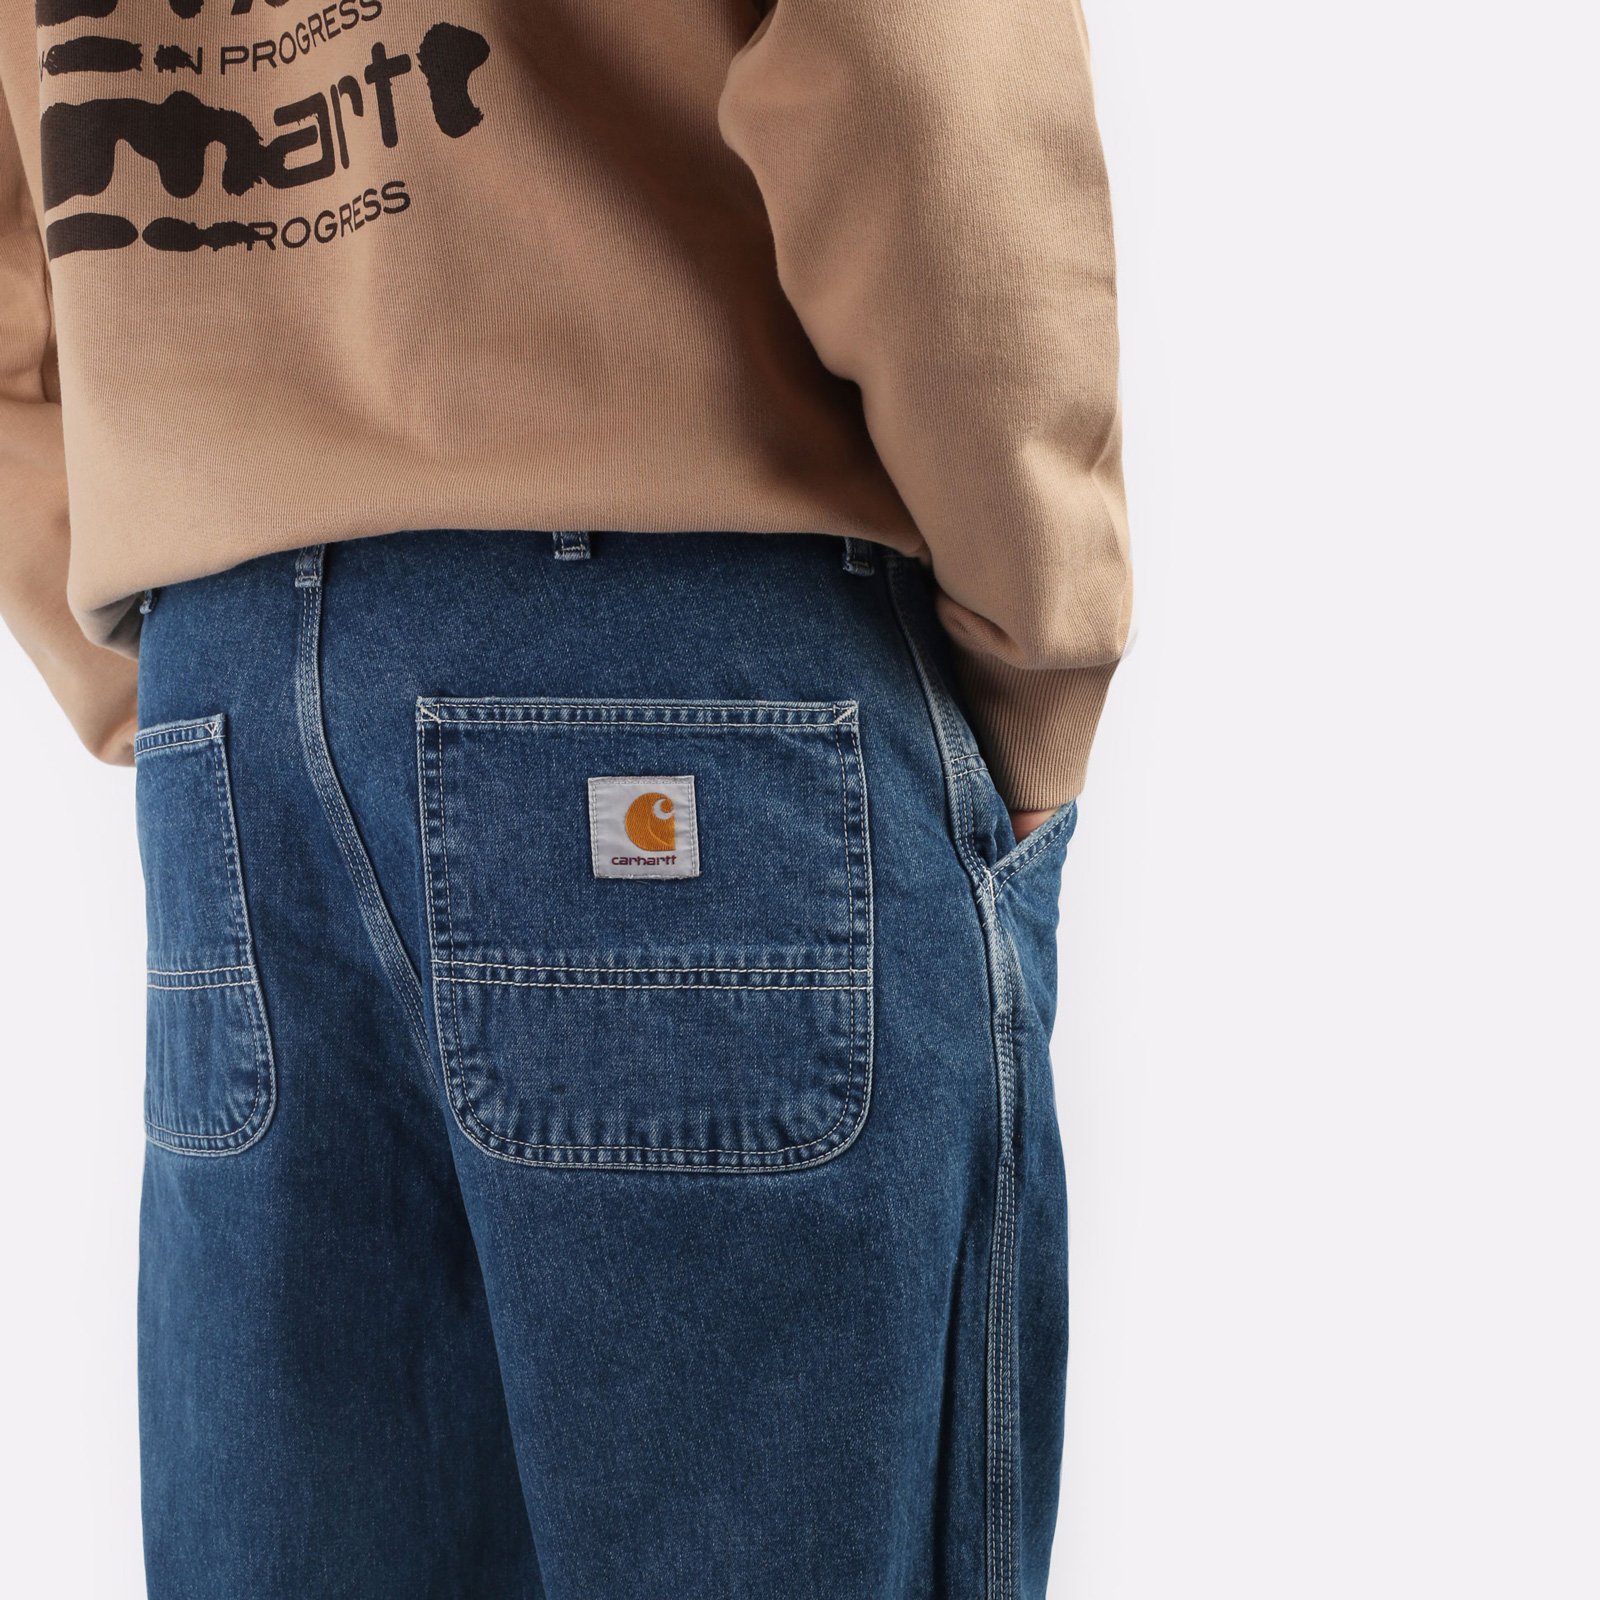 мужские джинсы Carhartt WIP Simple Pant  (I022947-blue)  - цена, описание, фото 4